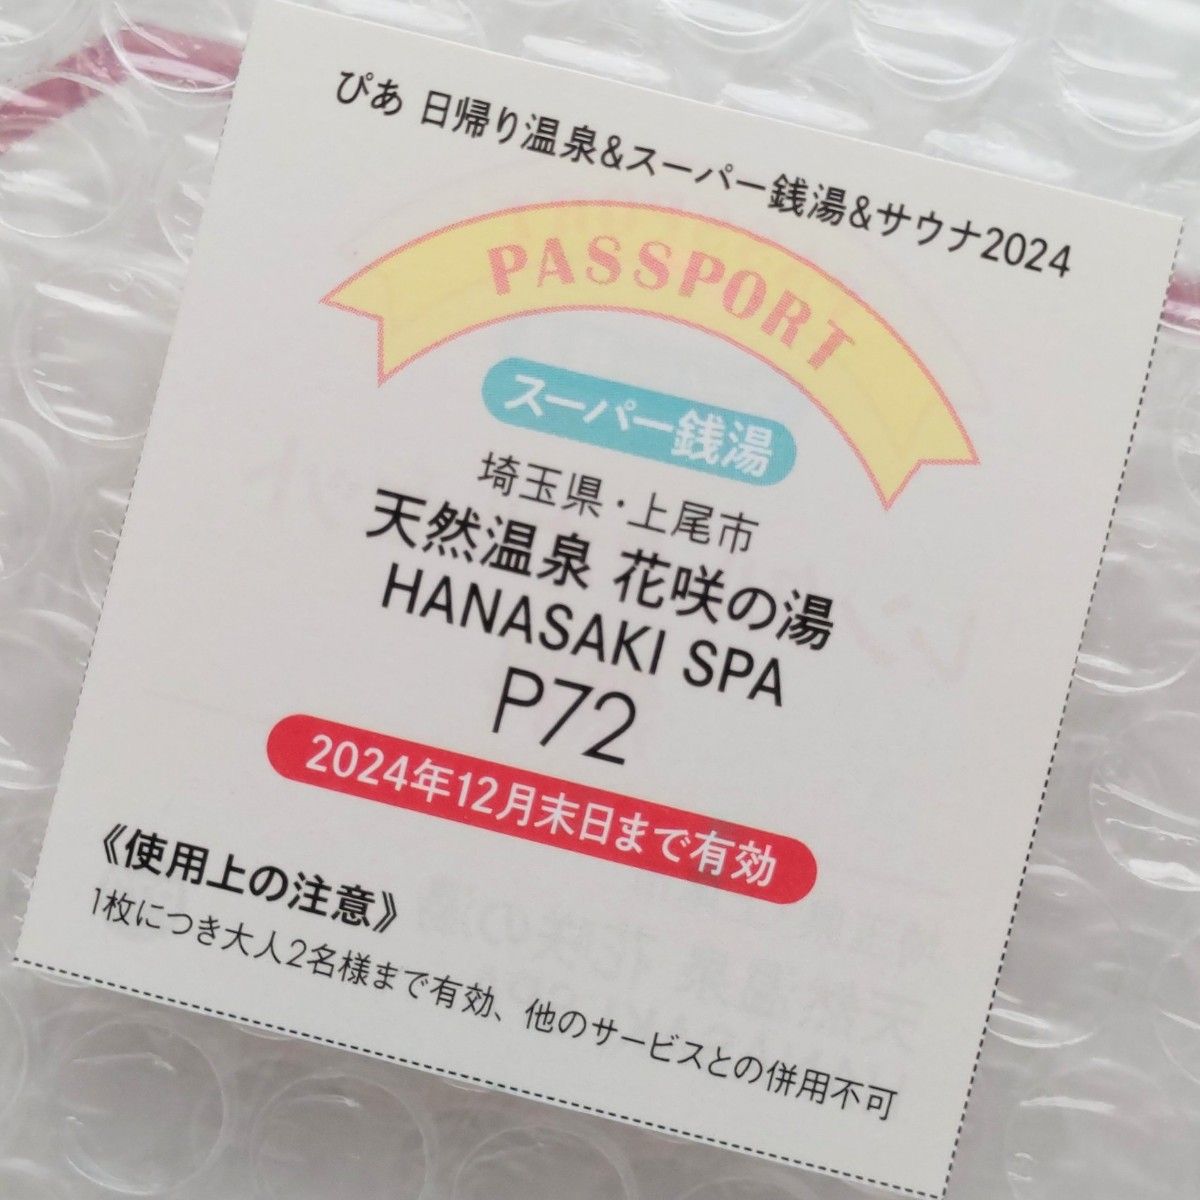 花咲の湯 HANASAKI SPA 大人一般入浴料半額 5枚＋レンタルタオルセット無料パスポート 3枚